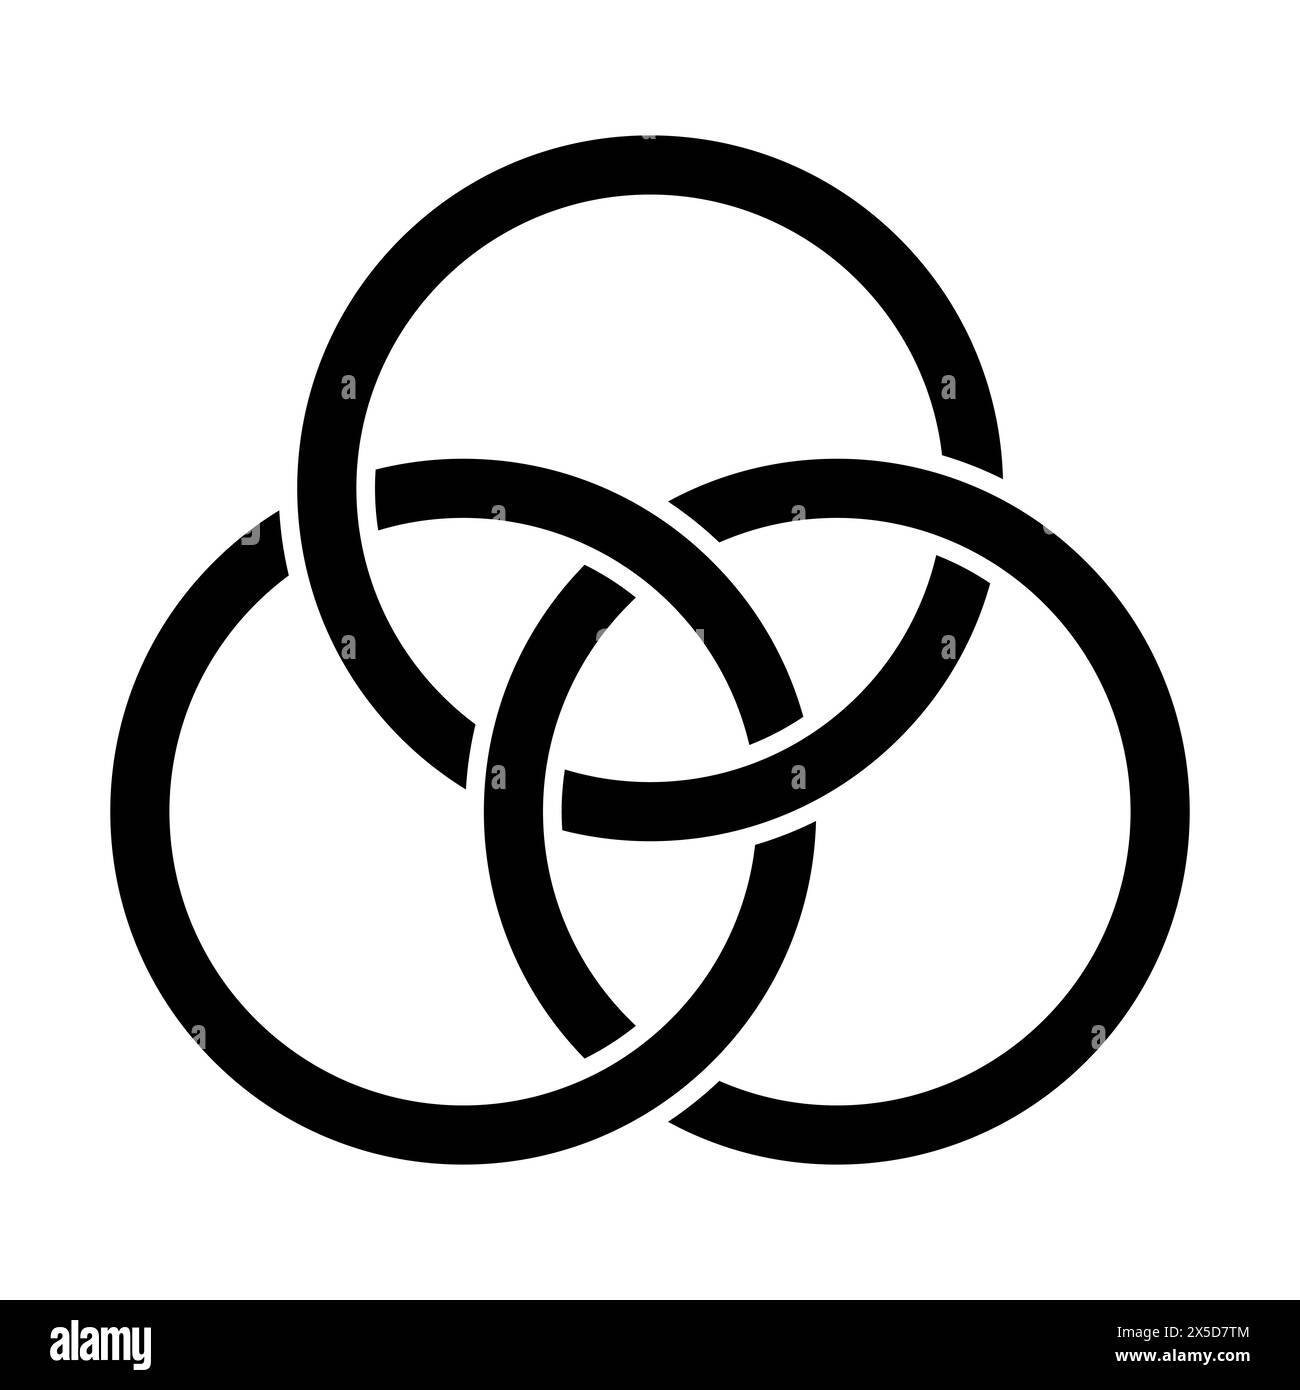 Emblem der Dreifaltigkeit, drei ineinander verschlungene Kreise, ein altes christliches Symbol, das die vereinigung von Vater, Sohn und Heiligem Geist darstellt. Stockfoto